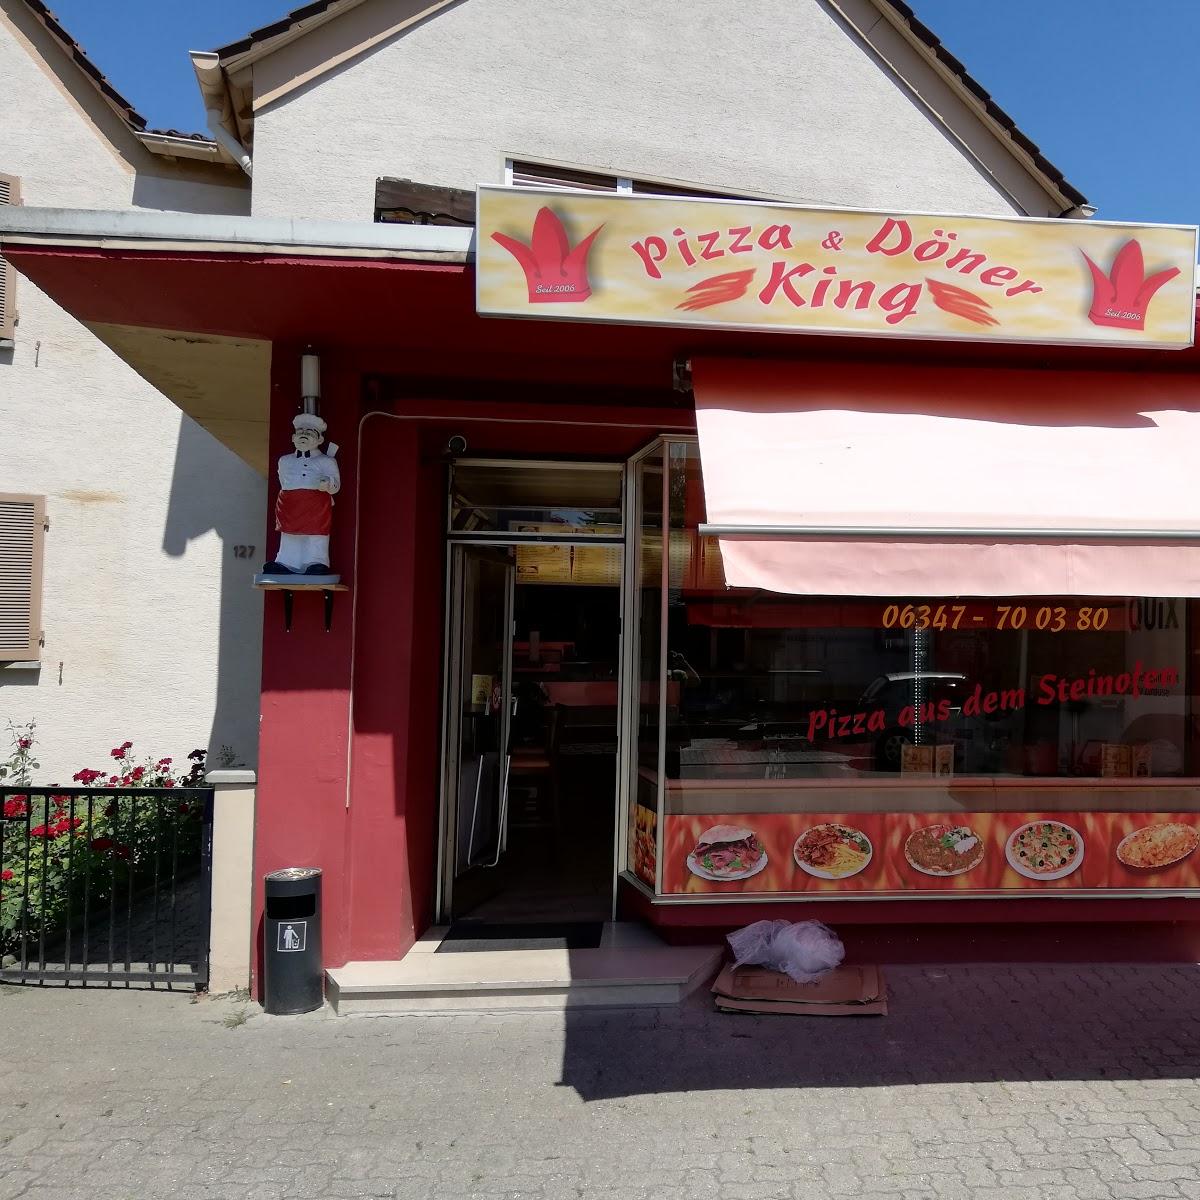 Restaurant "King Pizza Döner" in  (Pfalz)